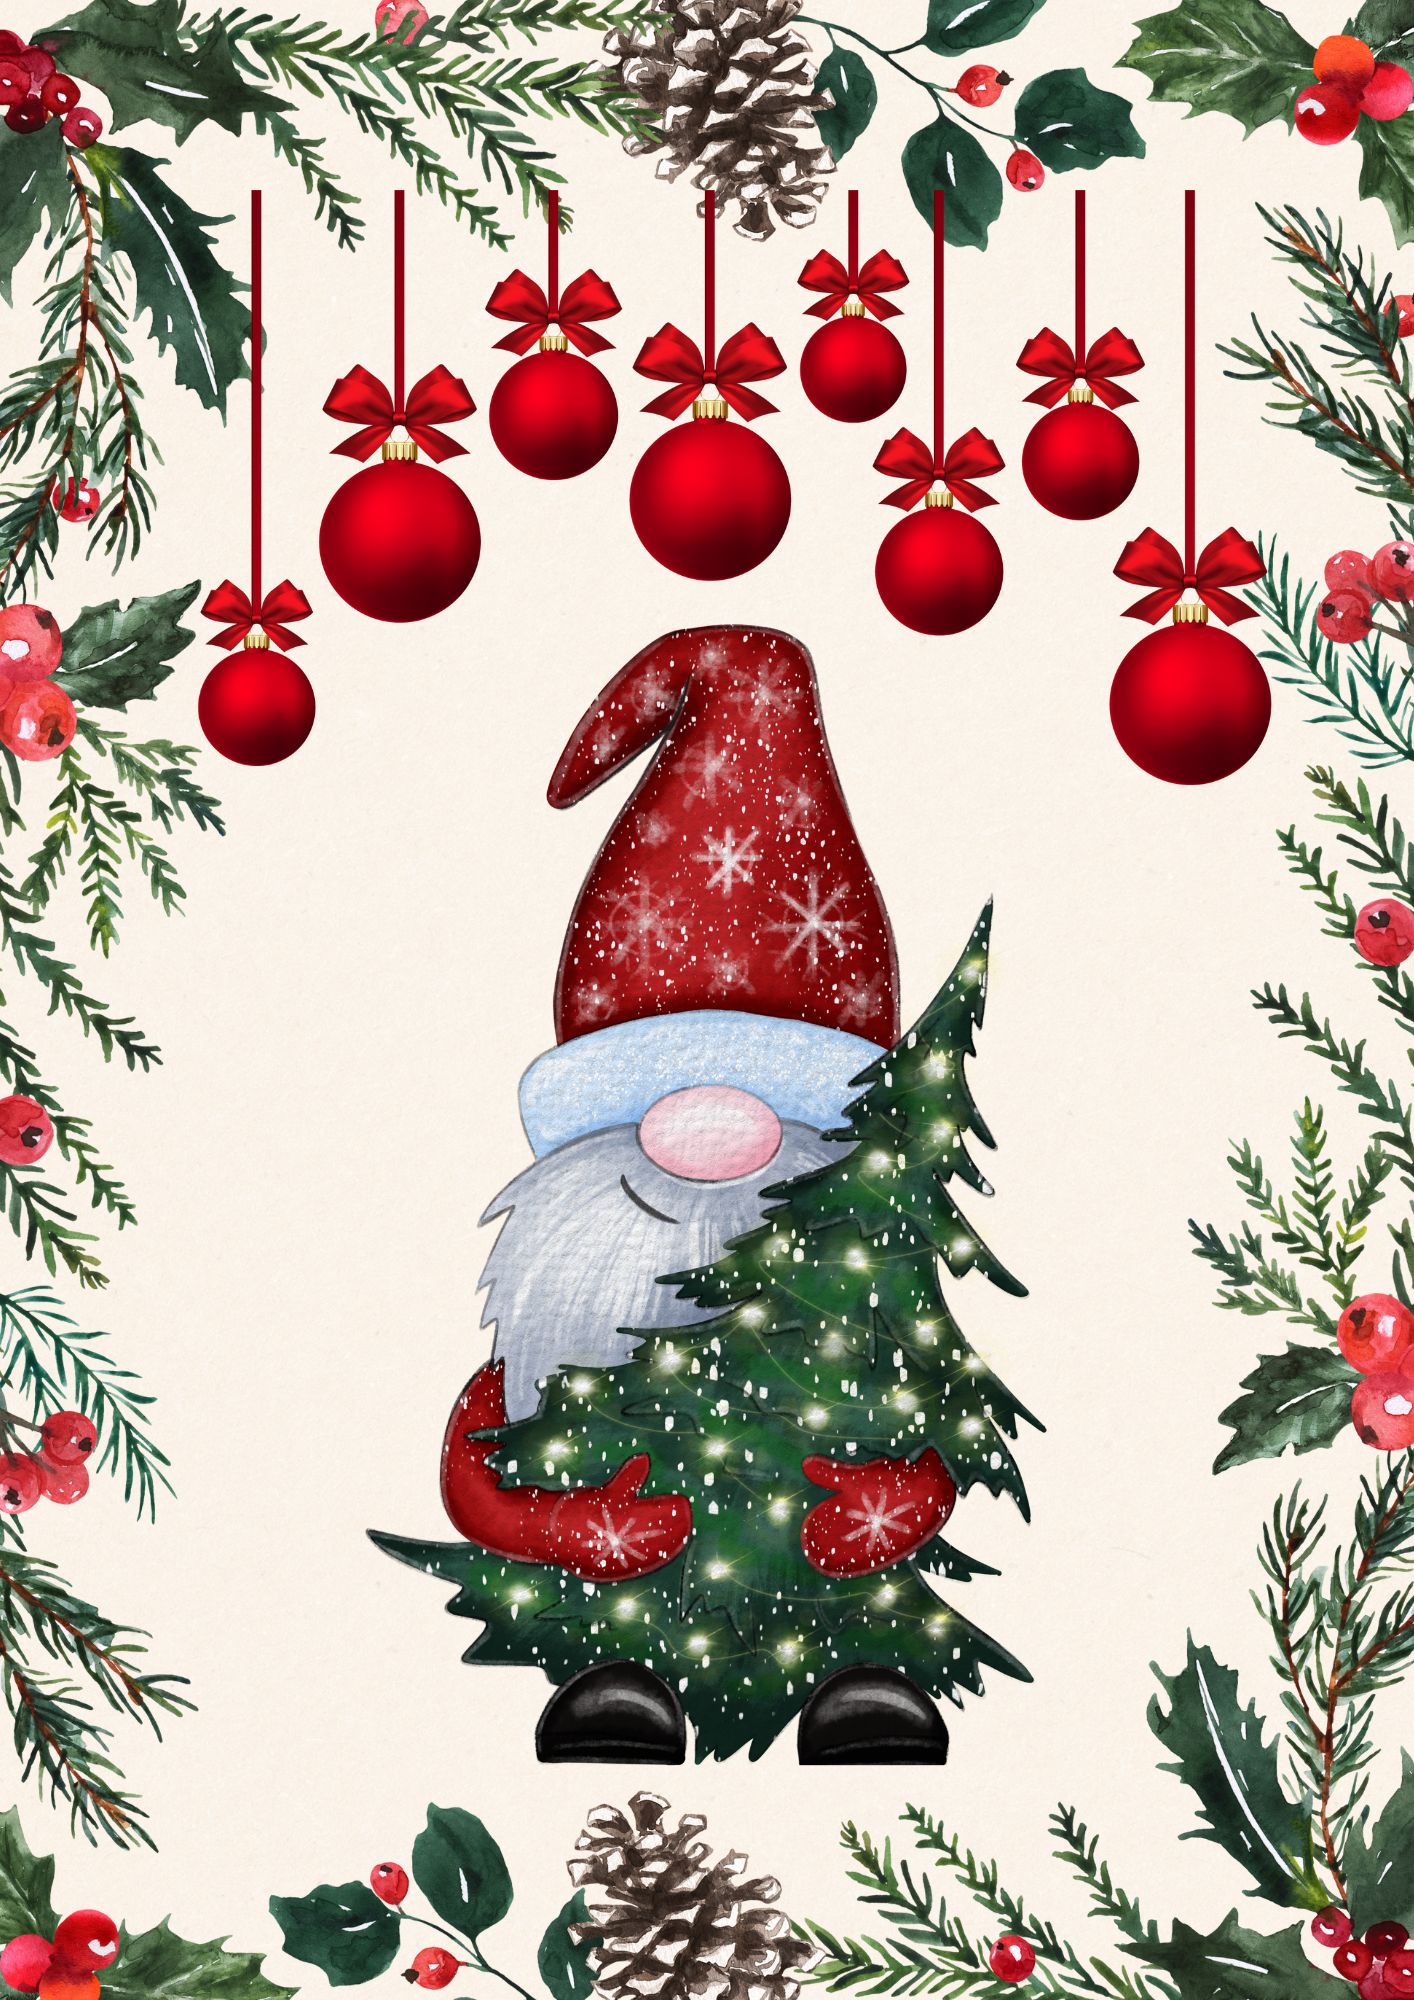 Logo konkursowe: pośrodku duży Mikołaj - w czerwonej czapce, z długą bialą brodą, w rękach trzyma choinkę. Dookoła na brzegach kartki gałązki świerkowe, u góry doadtkowo szyszka i bombki.